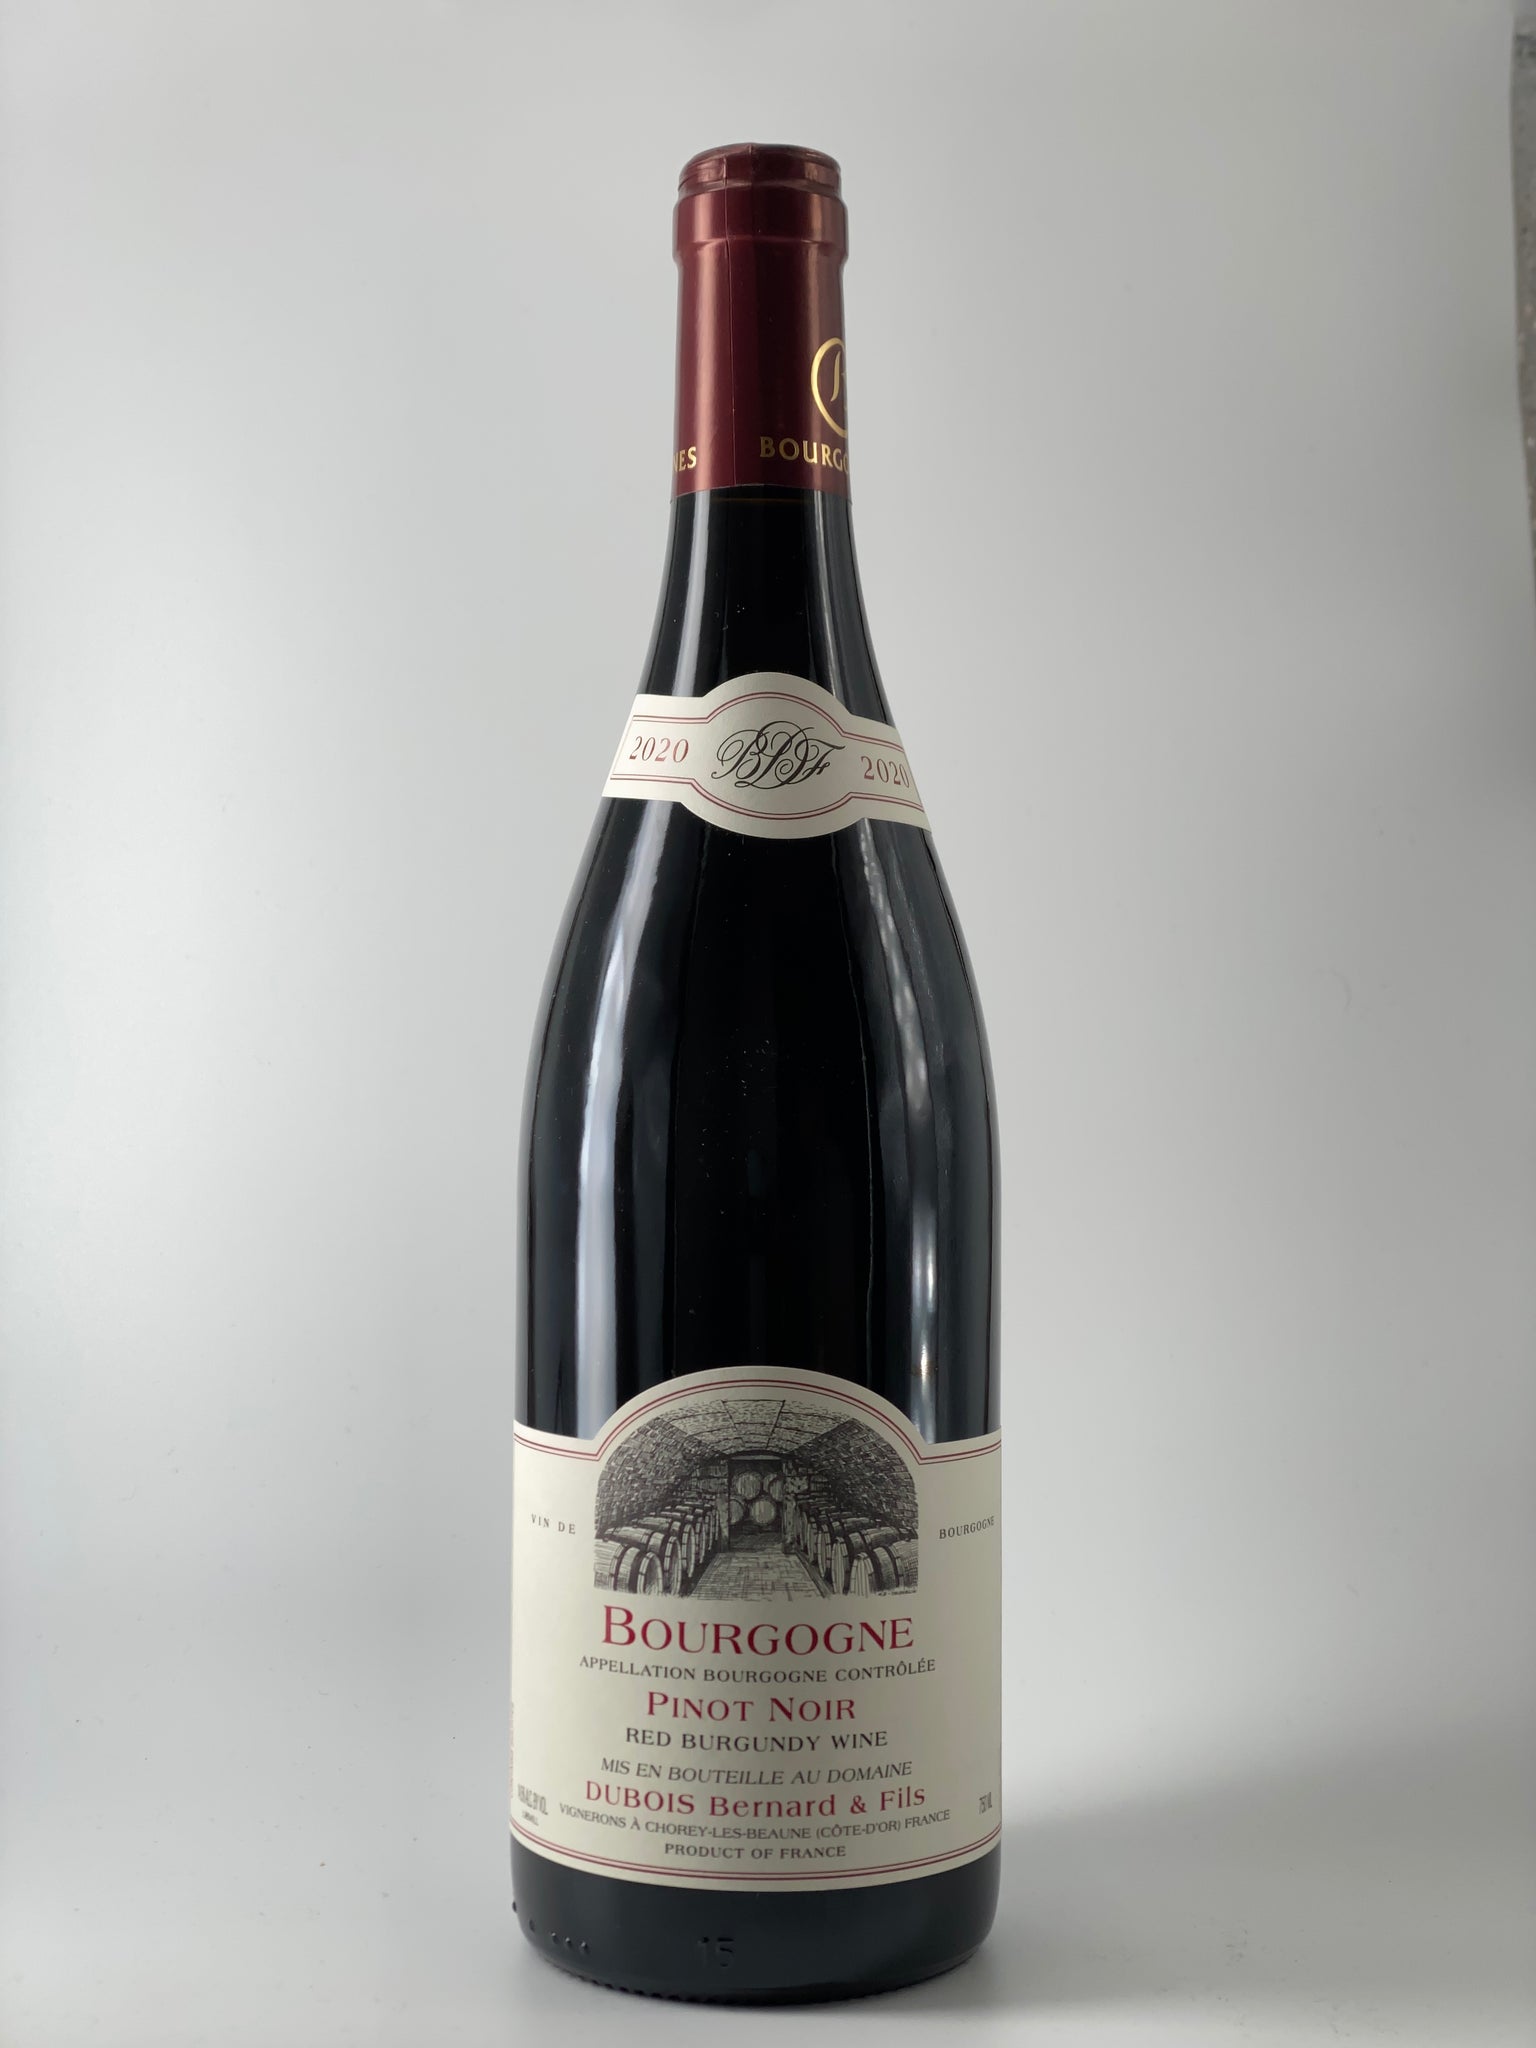 Burgundy Bourgogne, Domaine Dubois Bernard, Pinot Noir